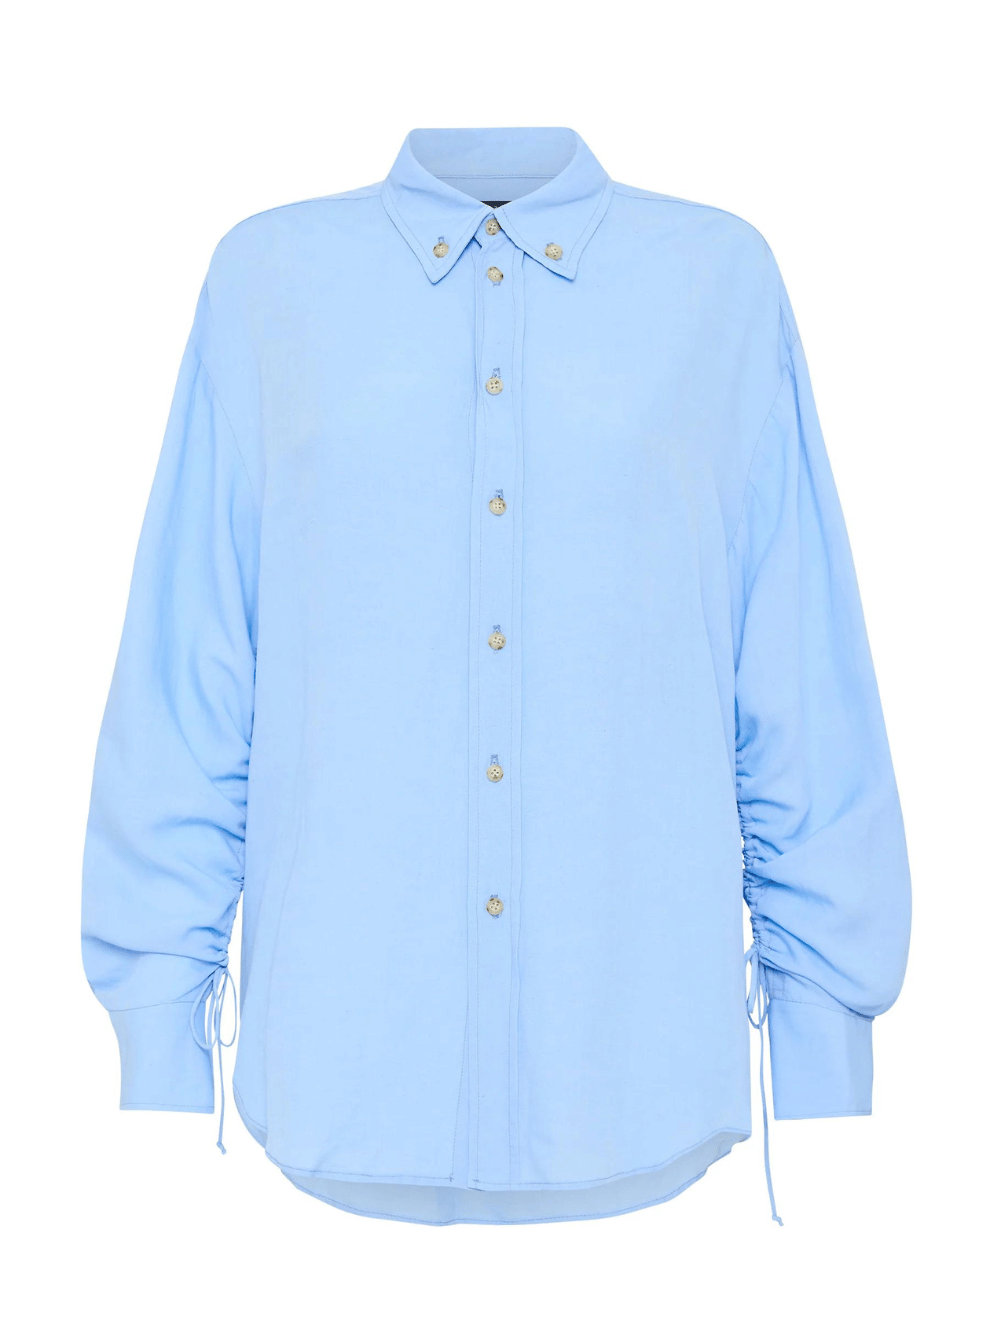 Viscose Linen Weekend Shirt in Pale Blue